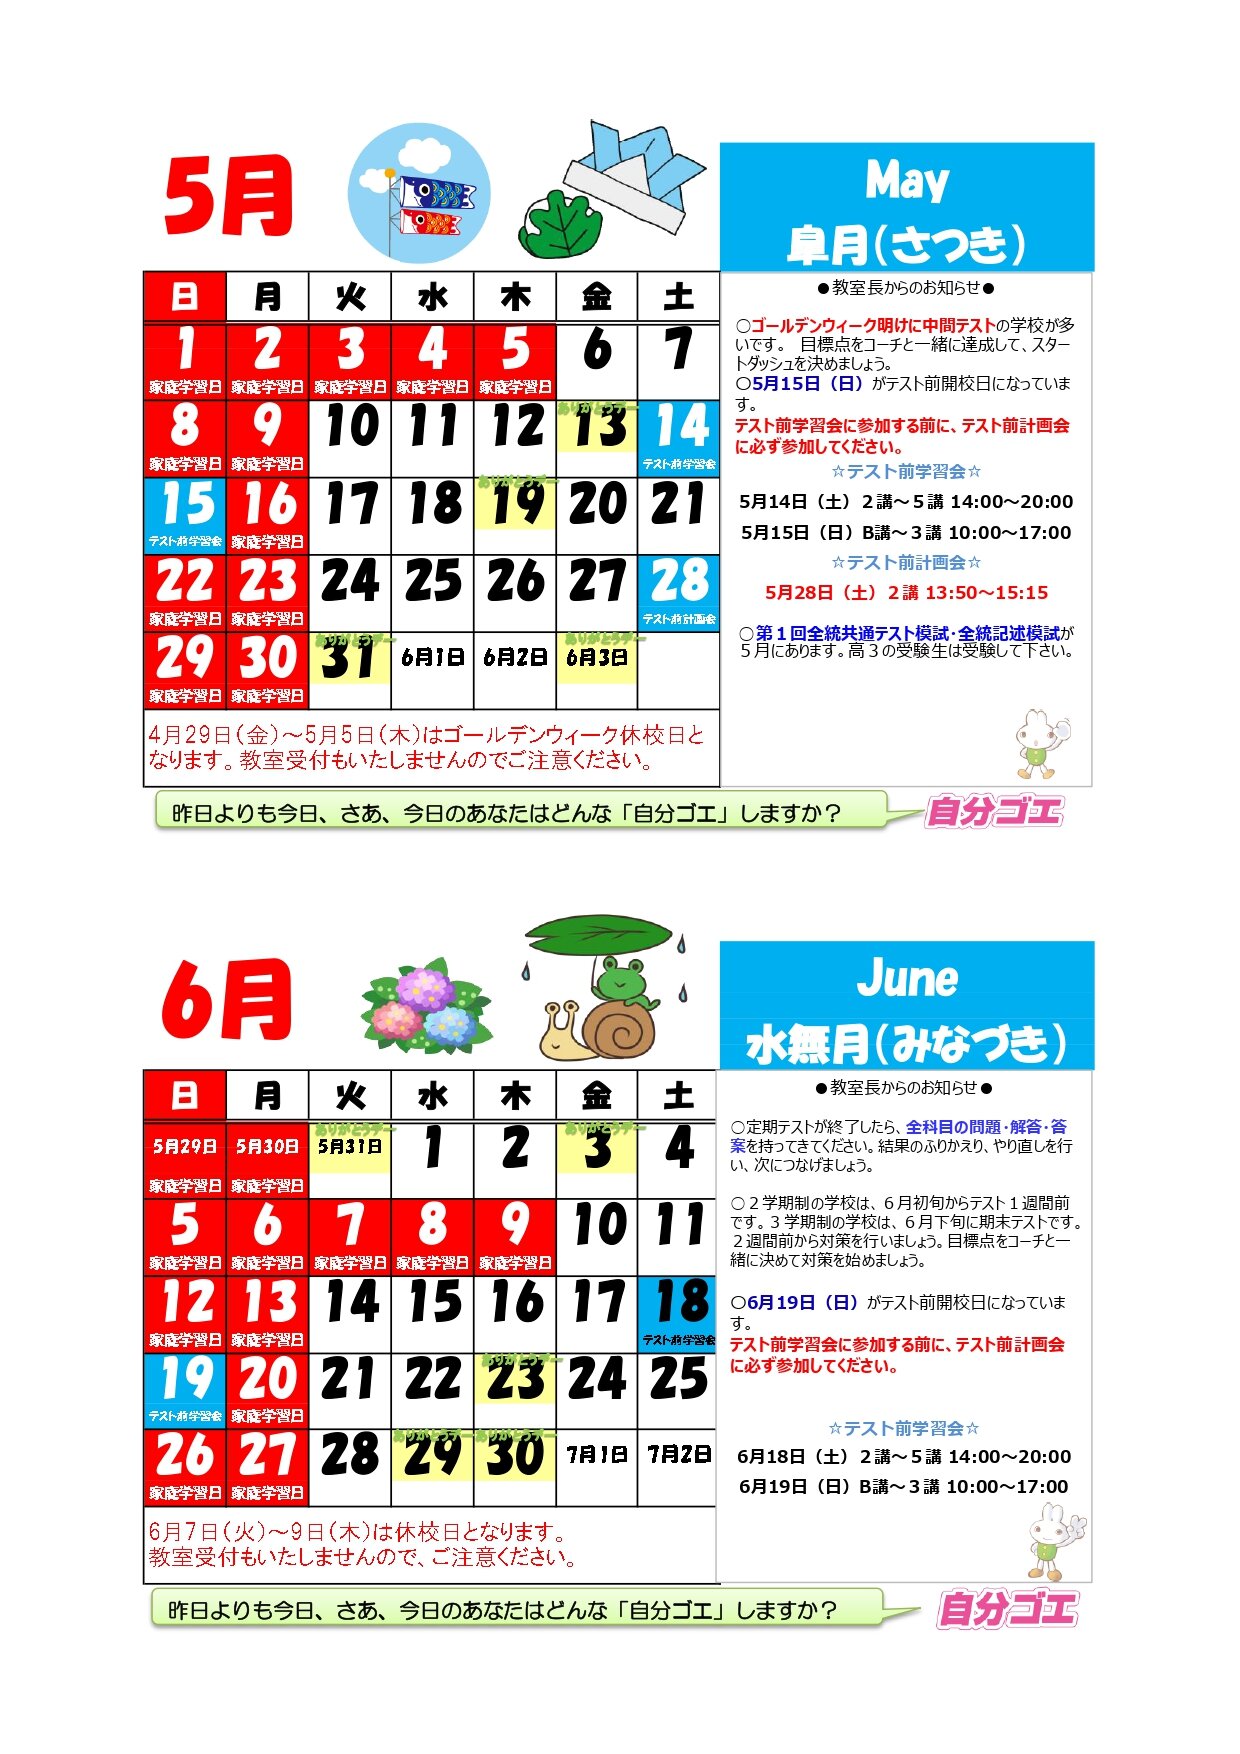 【2022年度】ブースカレンダー2022年5月6月_page-0001.jpg